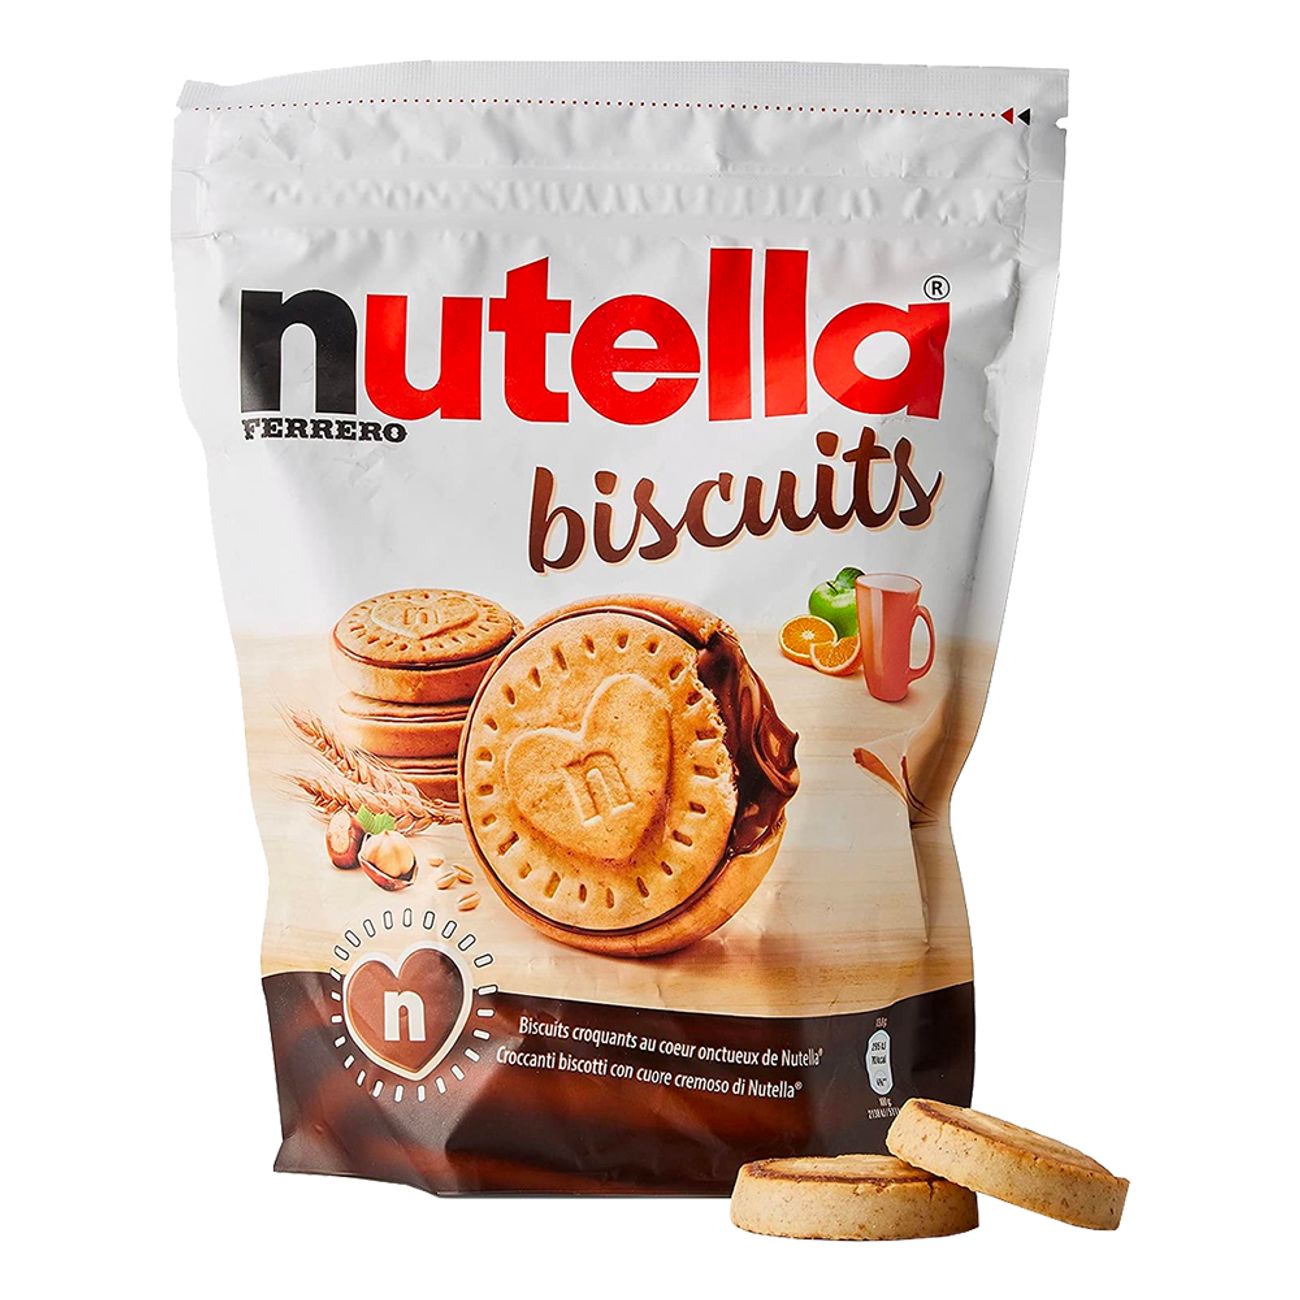 nutella-biscuit-chokladkakor-90140-1